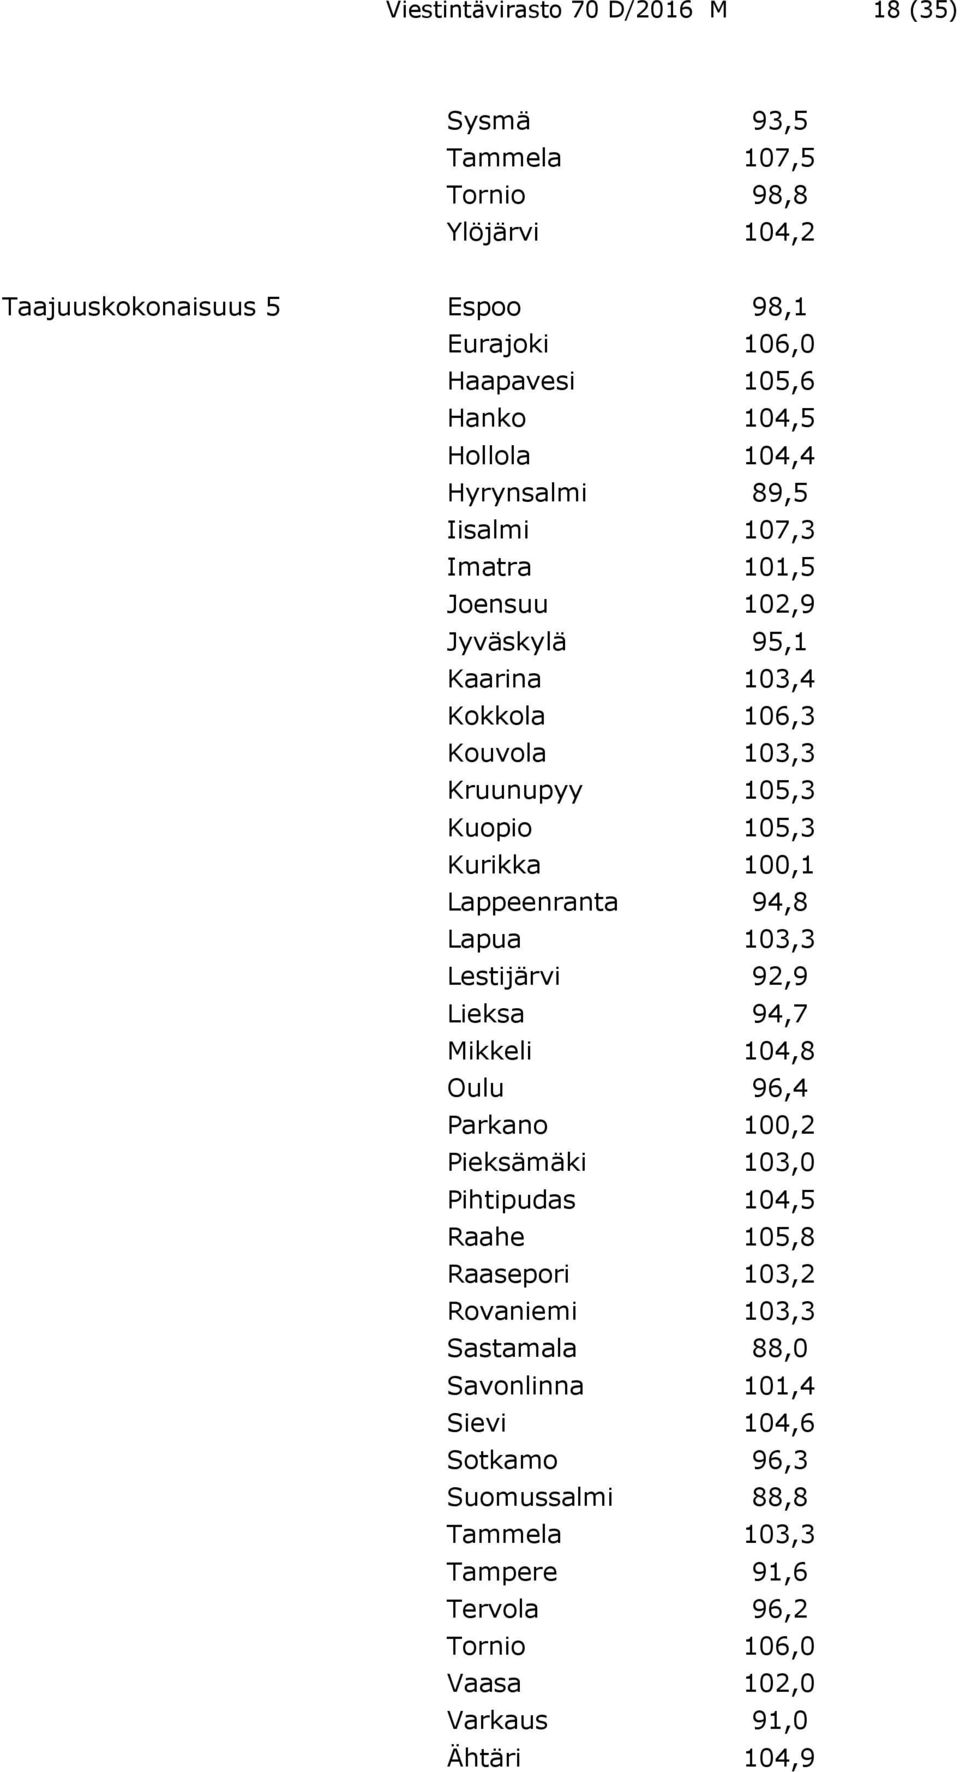 100,1 Lappeenranta 94,8 Lapua 103,3 Lestijärvi 92,9 Lieksa 94,7 Mikkeli 104,8 Oulu 96,4 Parkano 100,2 Pieksämäki 103,0 Pihtipudas 104,5 Raahe 105,8 Raasepori 103,2